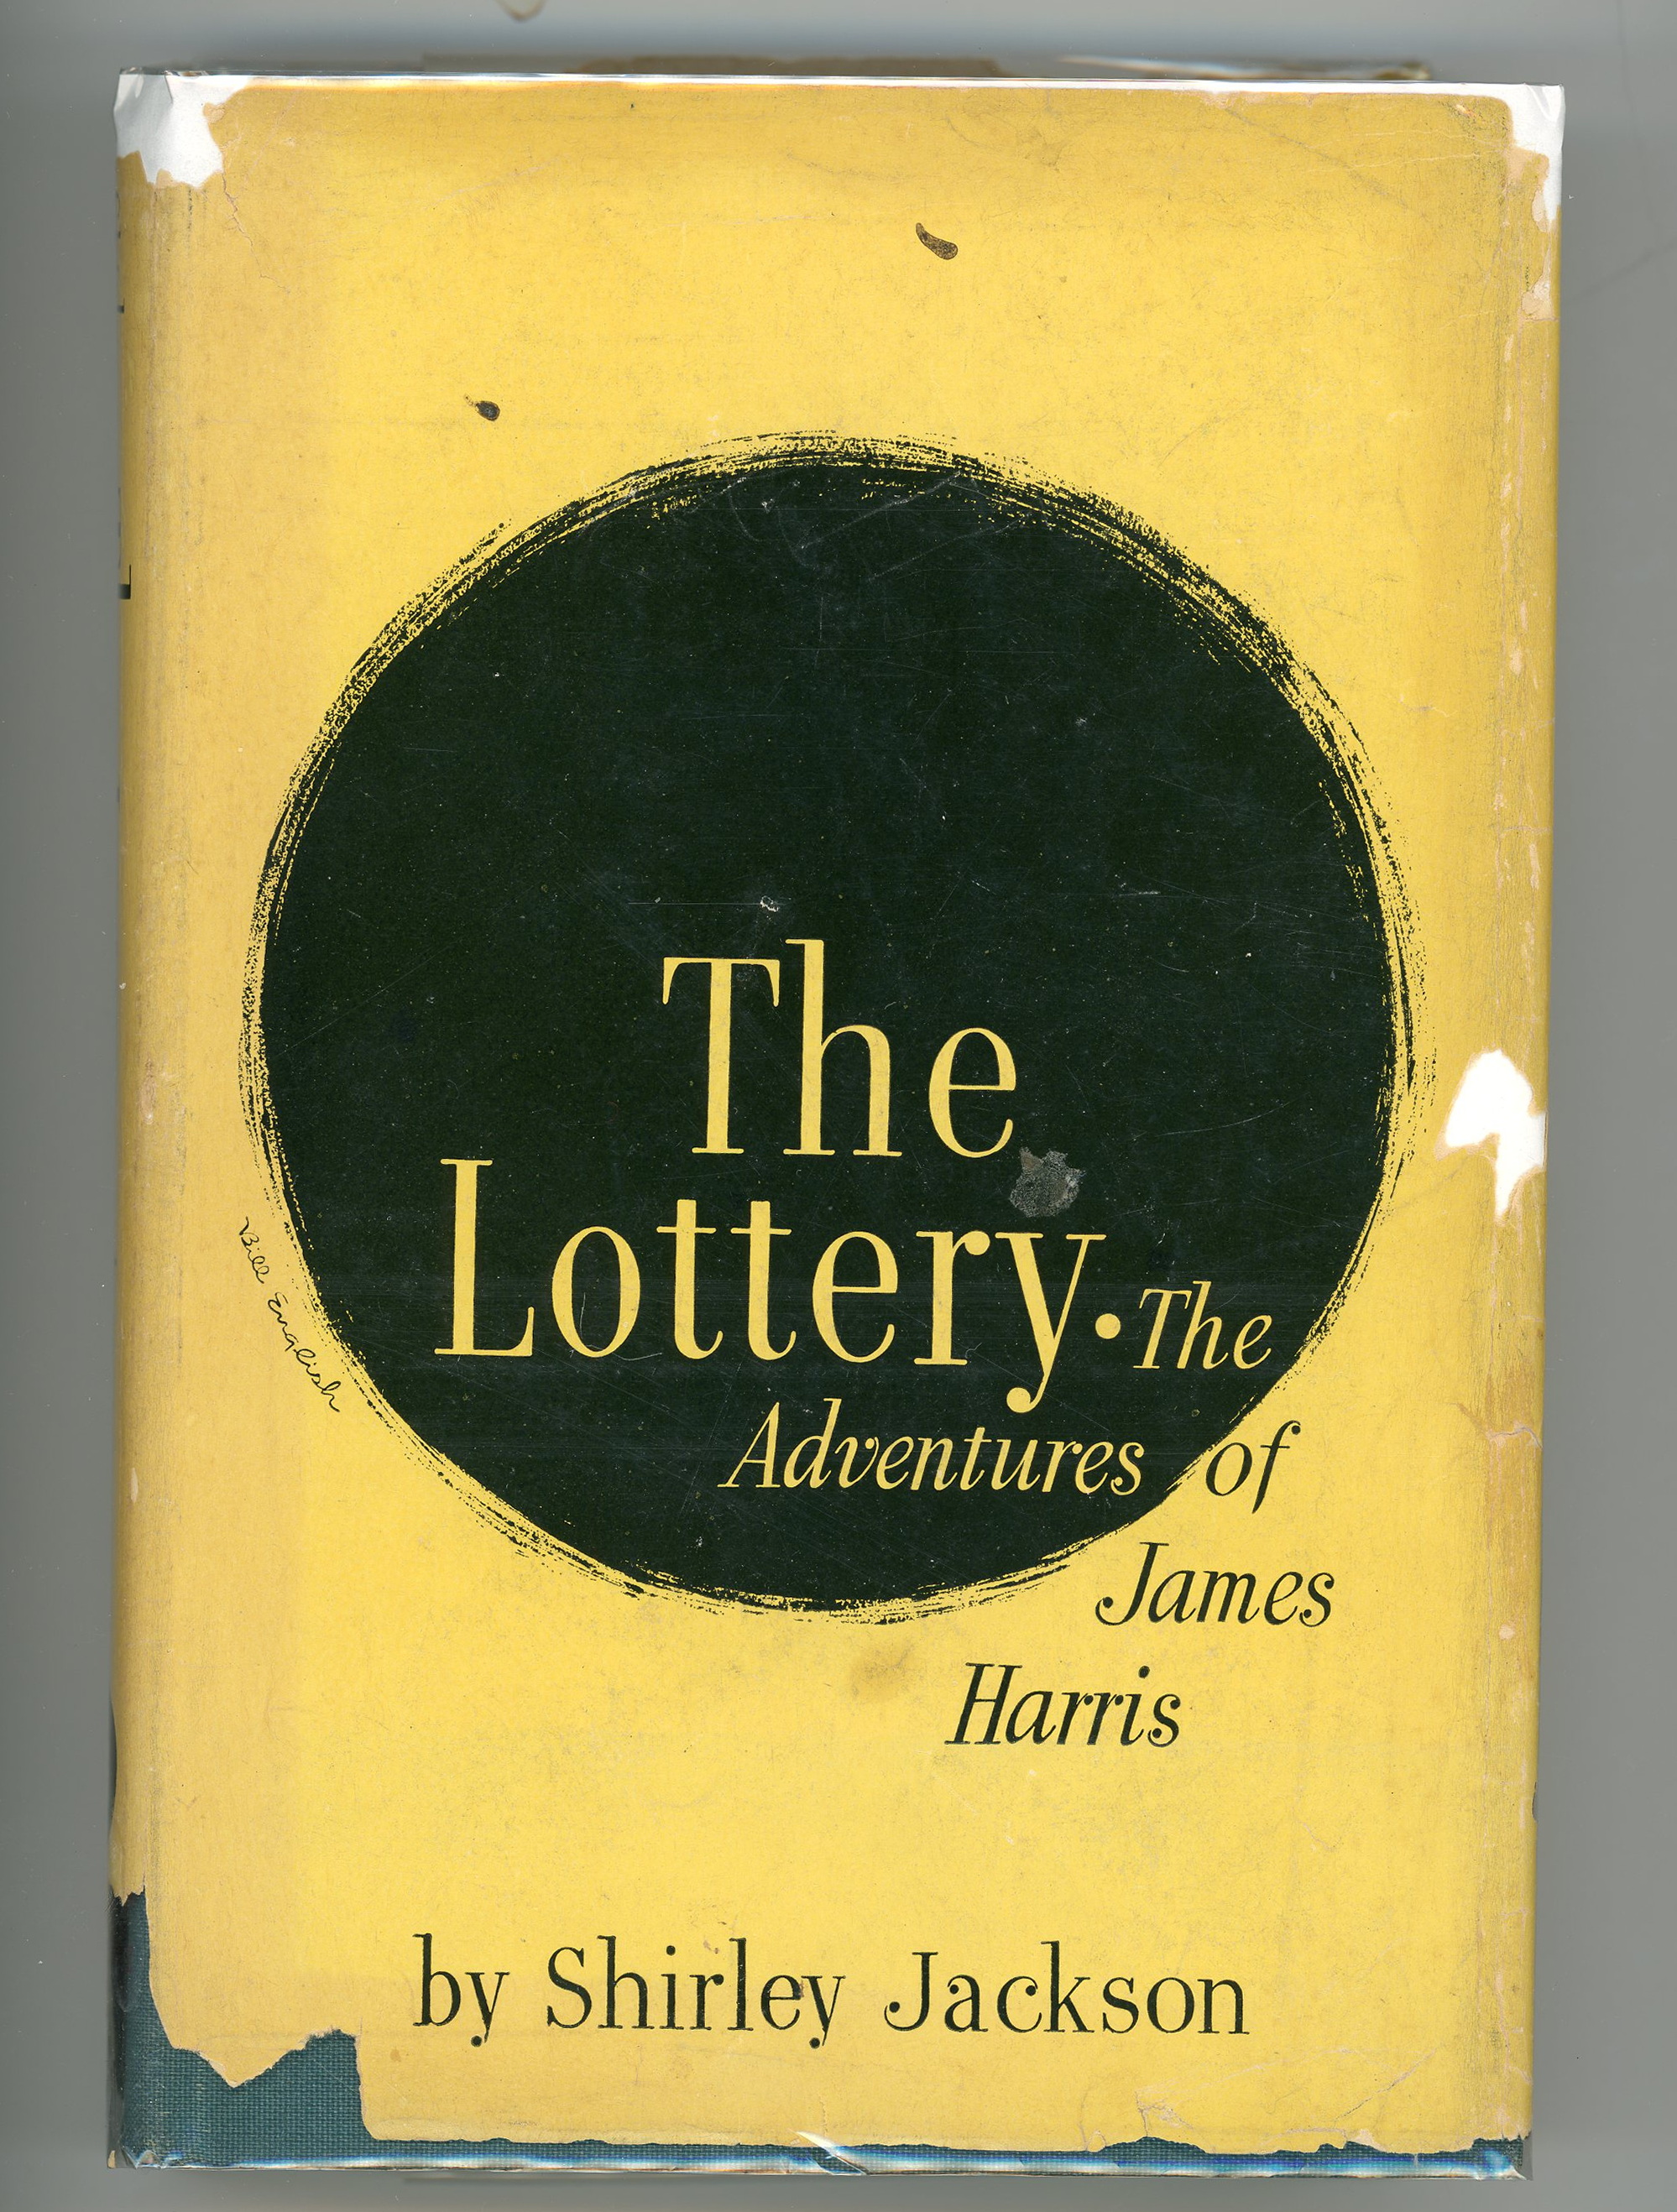 the lottery by shirley jackson short story summary